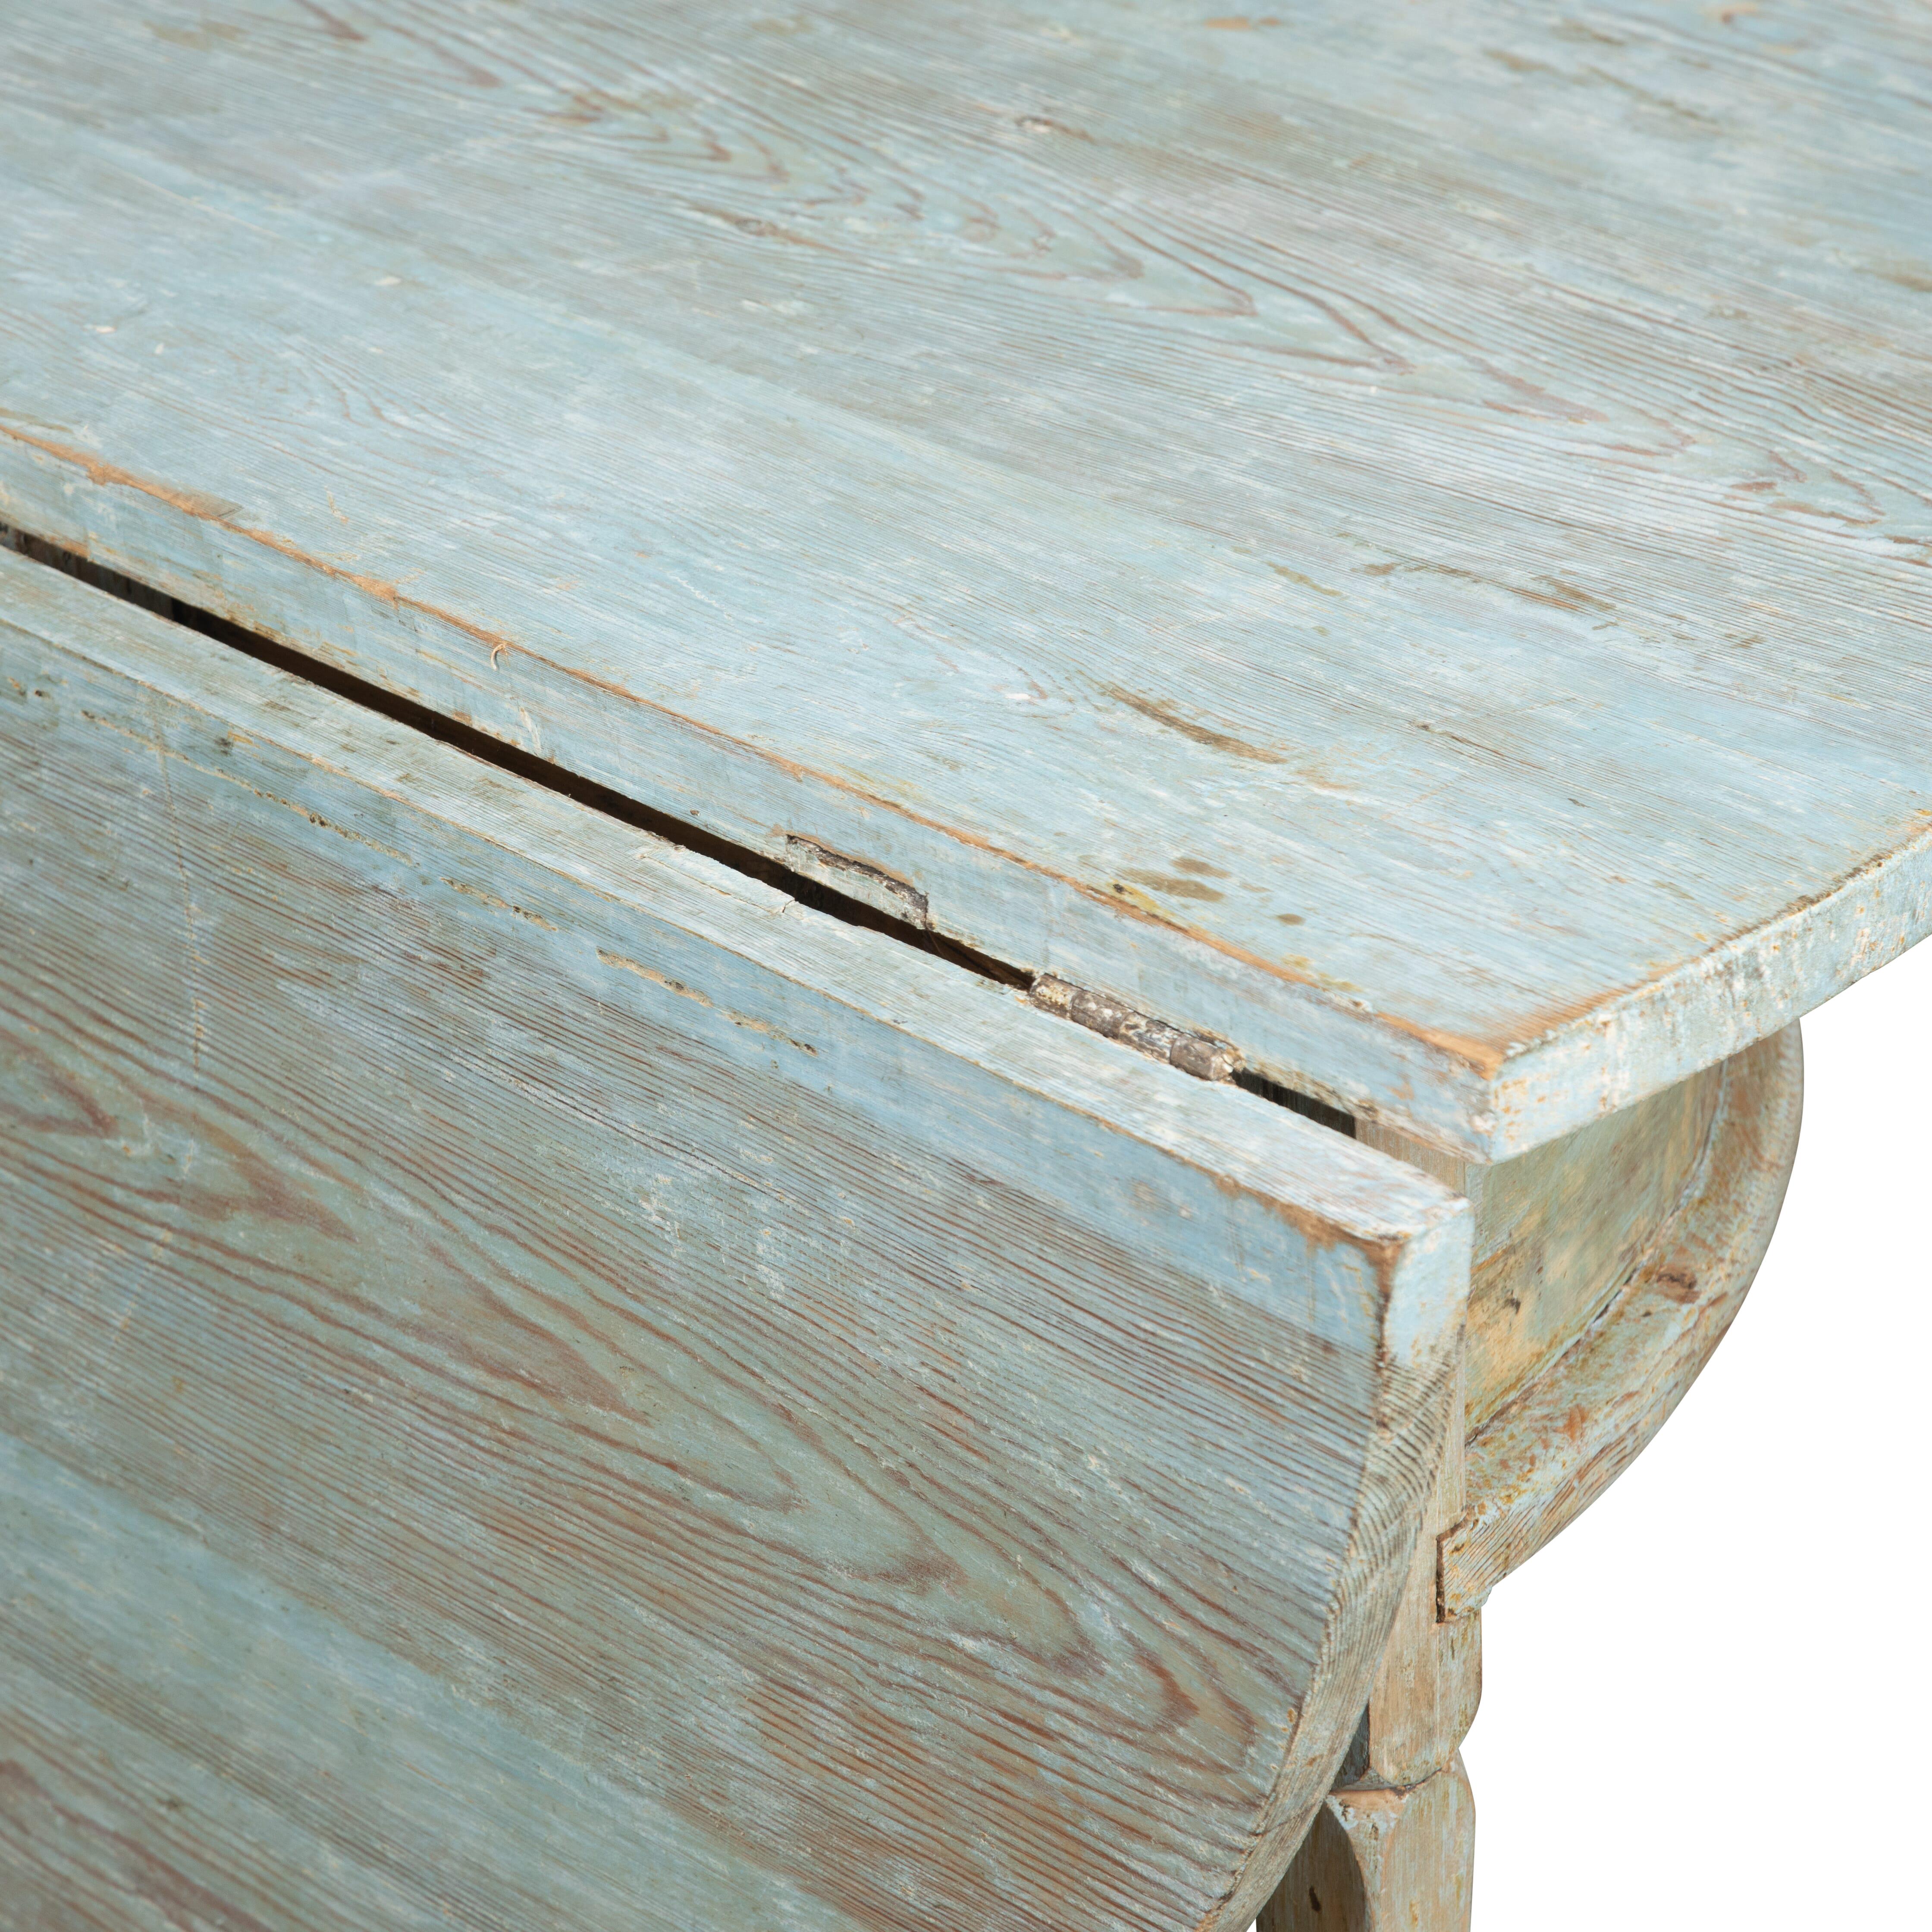 Schwedischer runder Klapptisch aus dem 19. Jahrhundert.
Dieser Tisch wurde bis auf die ursprüngliche pastellblaue Farbe trocken geschabt.
Die Maße entsprechen dem vollen Durchmesser in geöffnetem Zustand.